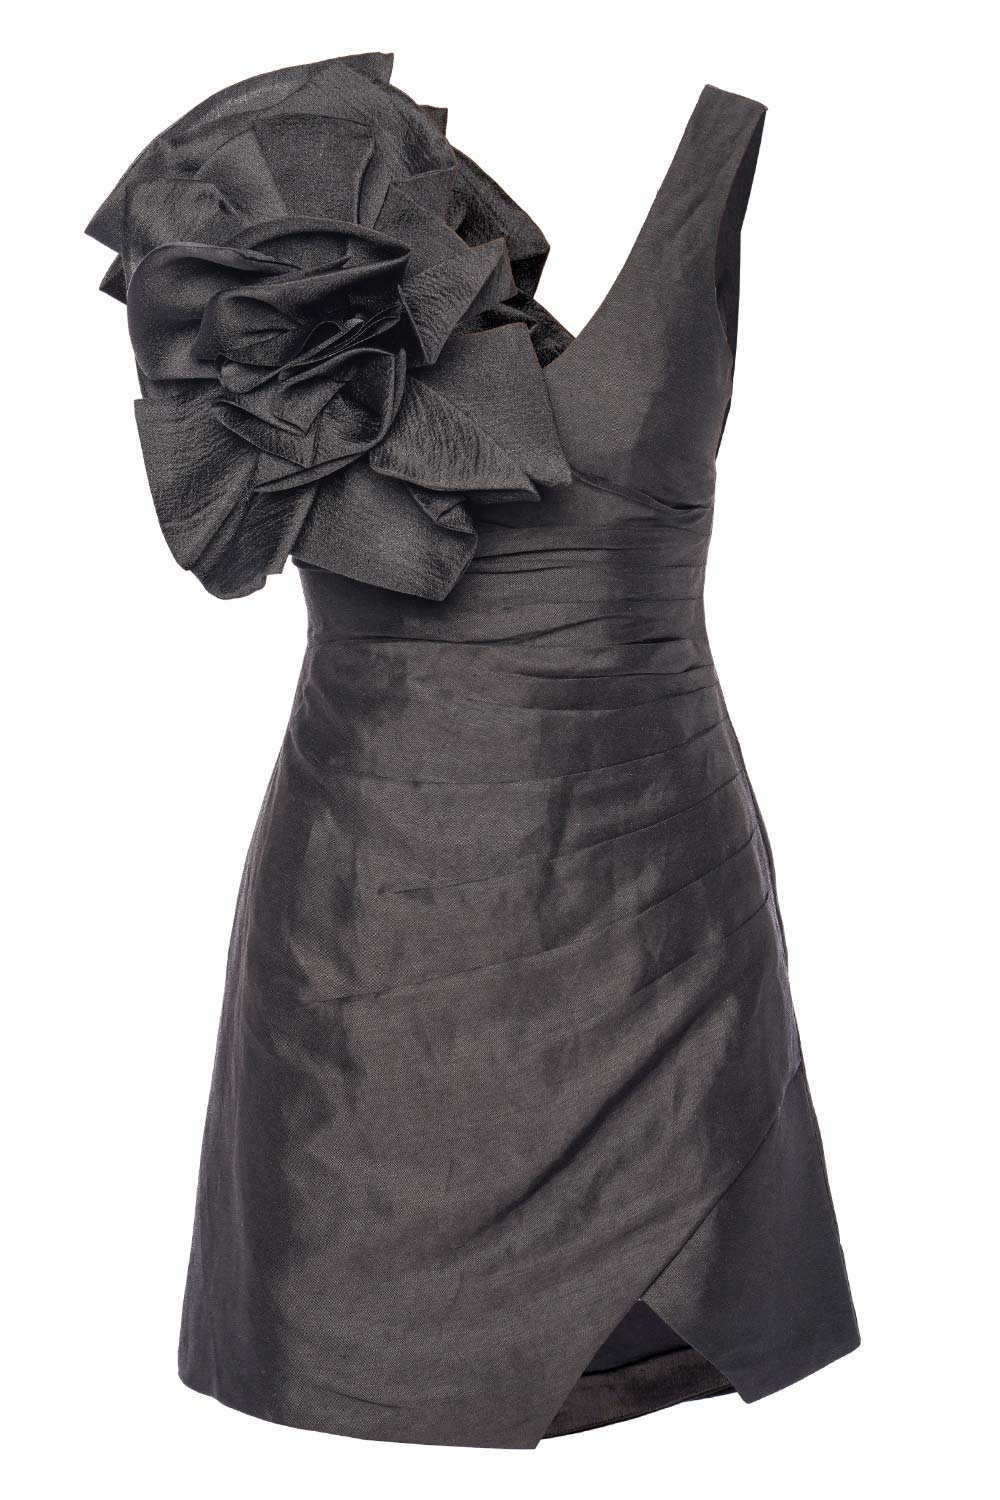 Aje. Energy Black Embellished Mini Dress